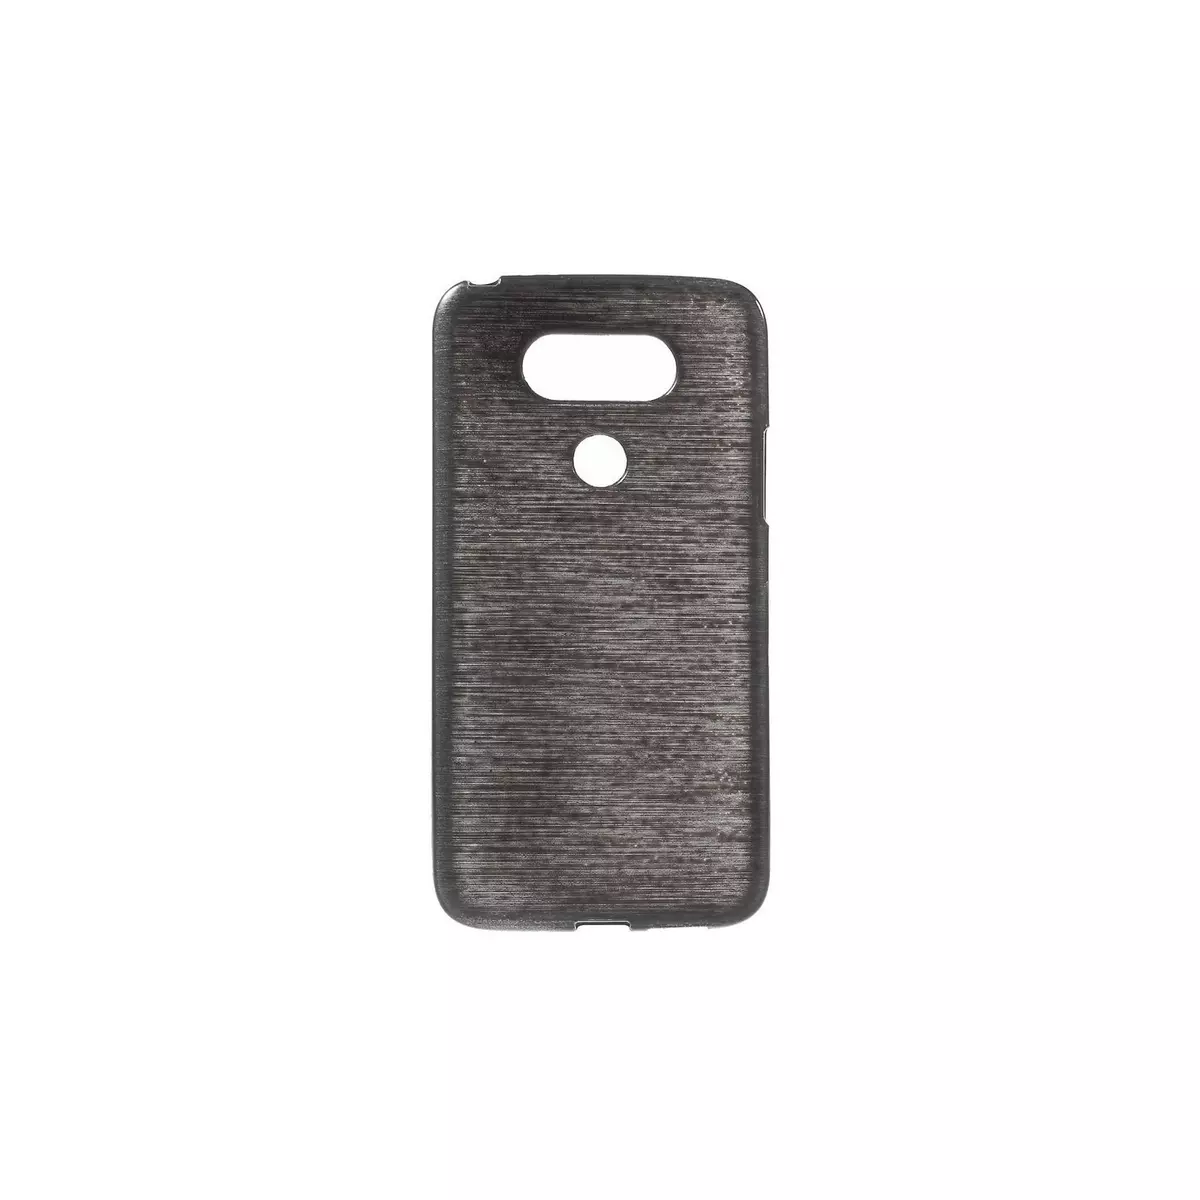 amahousse Coque souple LG G5 plastique noir aspect brossé translucide